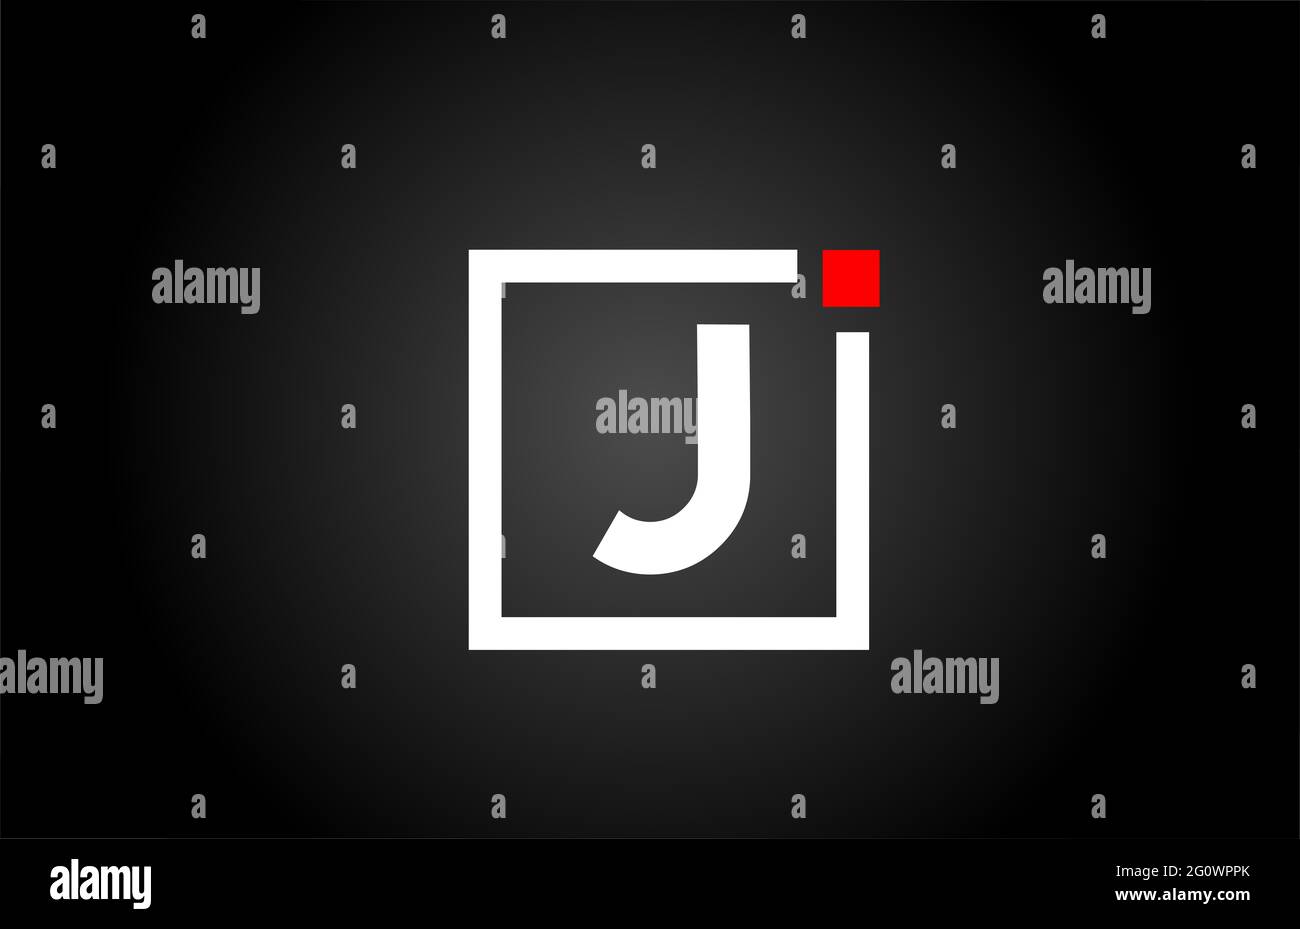 Logo dell'icona lettera J in bianco e nero. Design aziendale e aziendale con punto quadrato e rosso. Modello di identità aziendale creativa Foto Stock